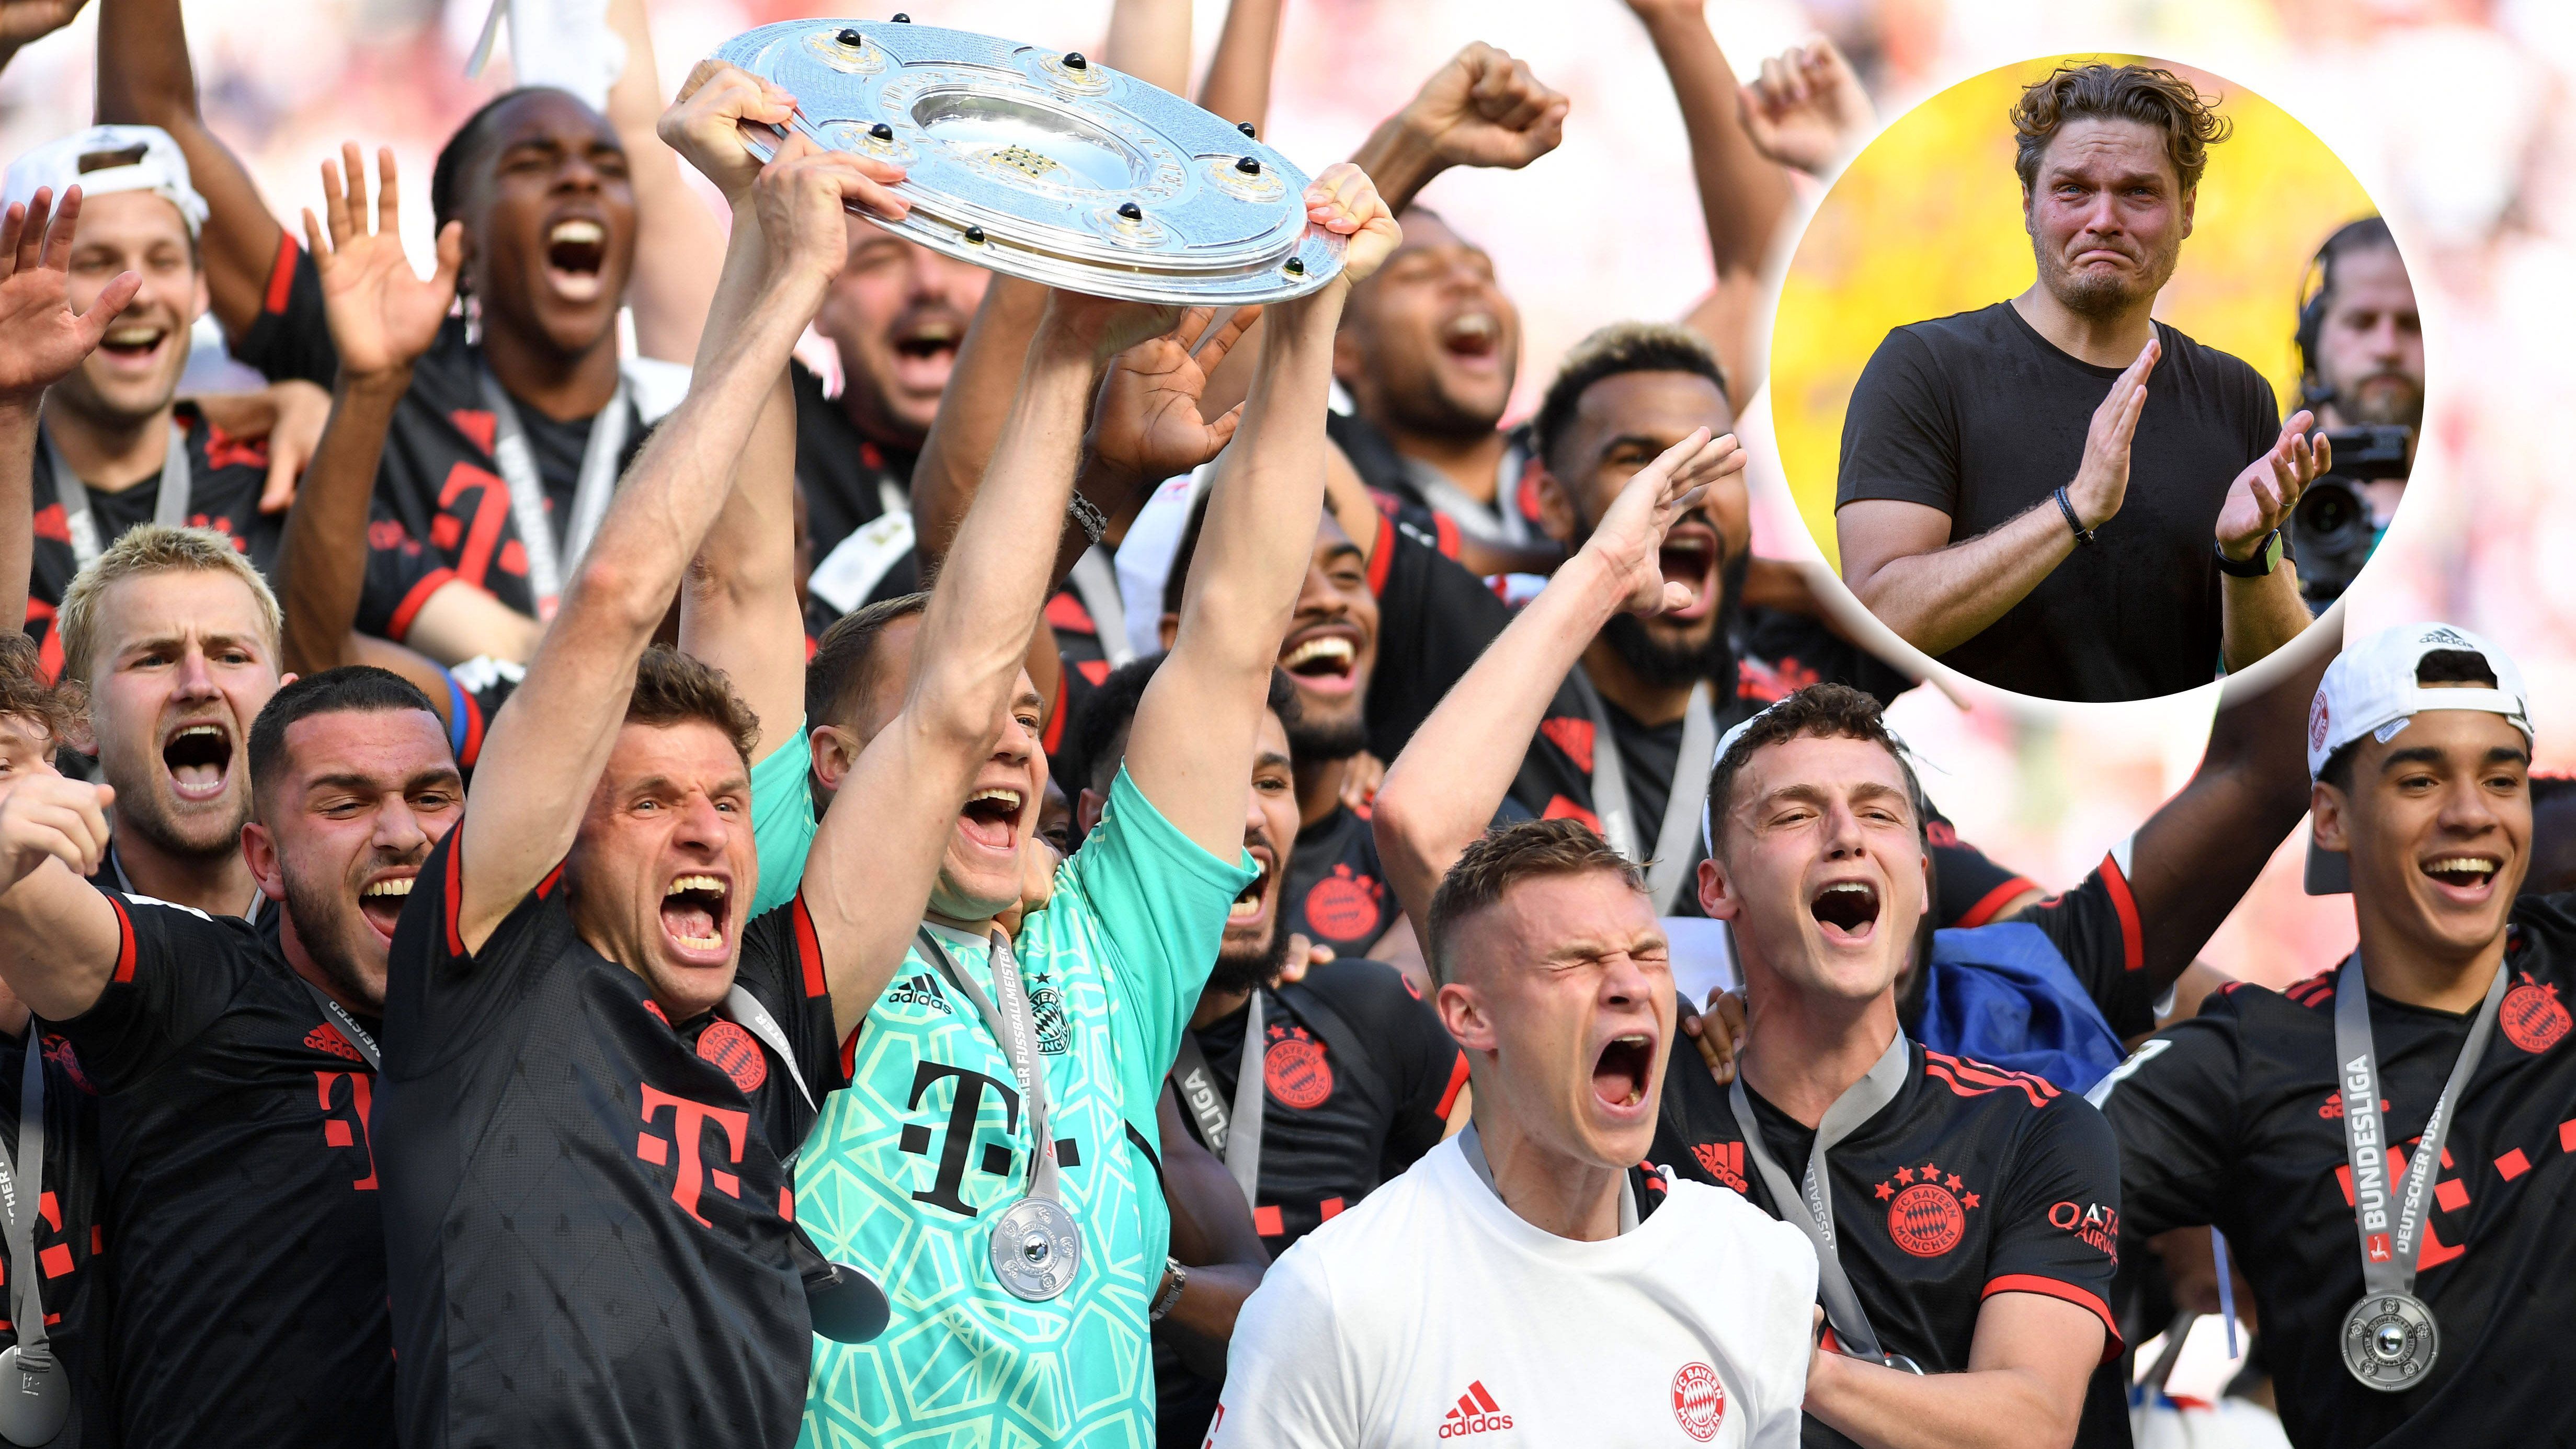 
                <strong>Last-Minute-Meister</strong><br>
                Und doch bleibt den Münchnern eine Saison ohne Titel erspart. Jamal Musiala wird mit seinem späten 2:1-Siegtreffer in Köln zum Match- ach was, zum Meisterschaftswinner. Die Bayern werden Meister - auch weil der BVB es nicht schafft, zuhause gegen Mainz (2:2) zu gewinnen. Doch noch das Happy End einer scheinbar verkorksten Saison?
              